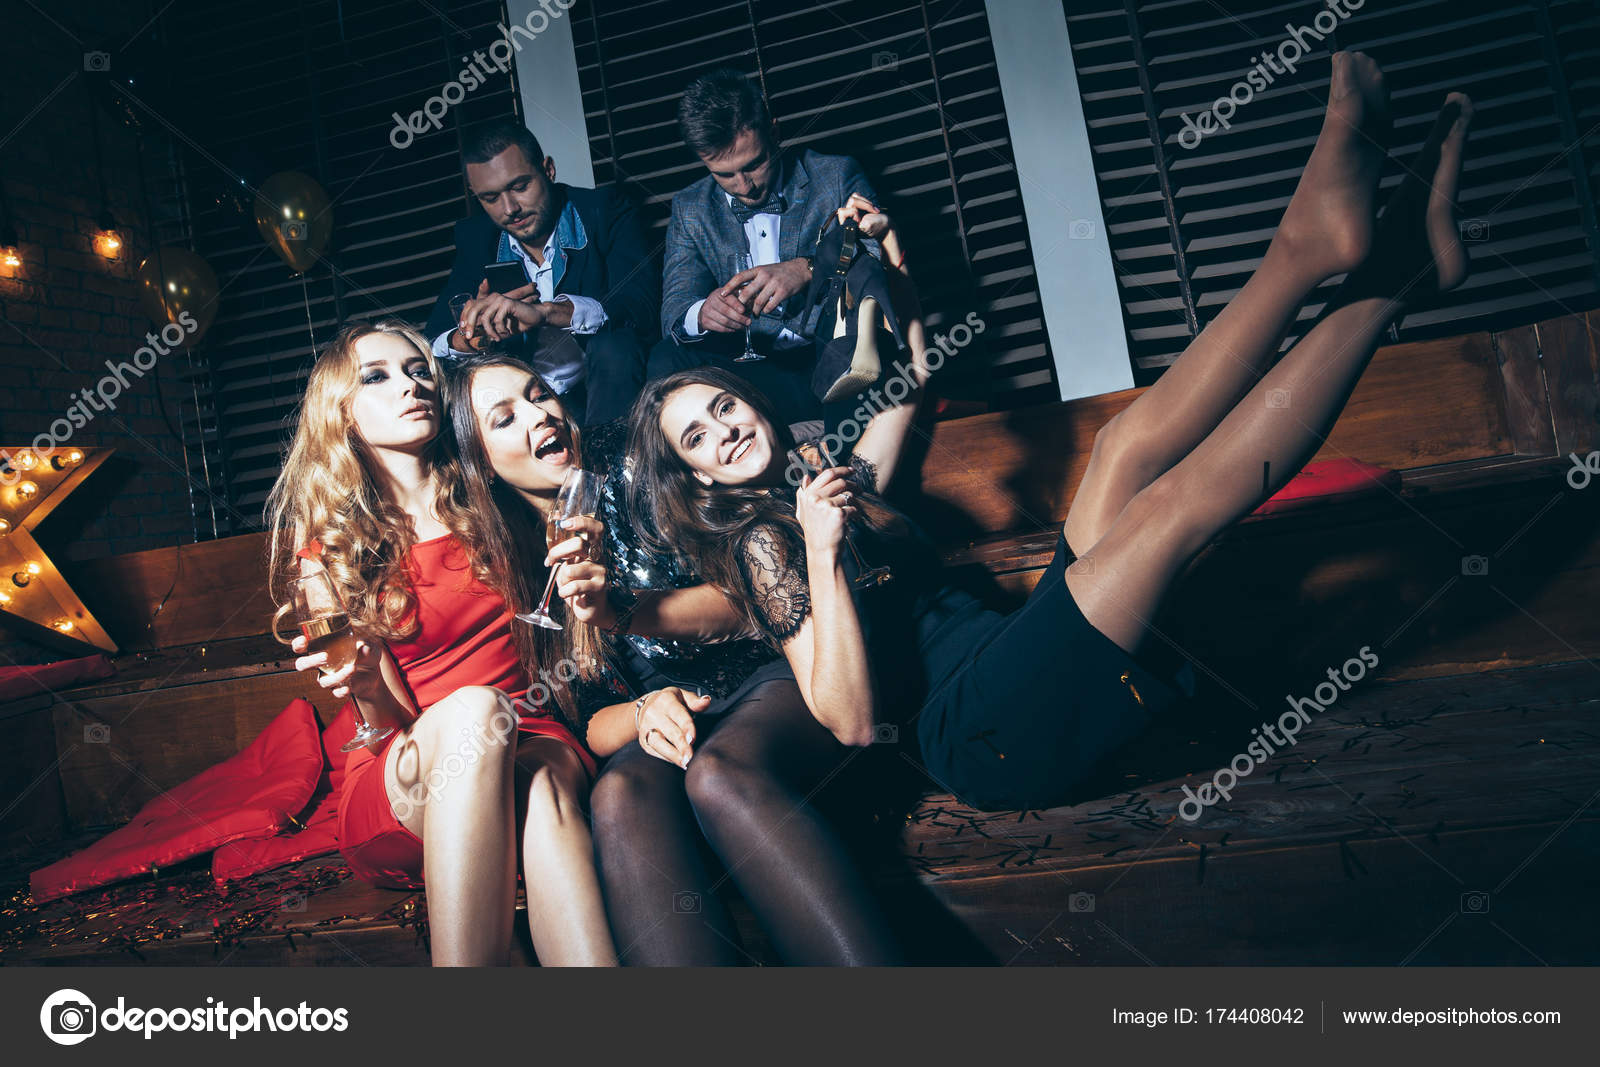 Women at night club Stock Photo by ©Gladkov 174408042